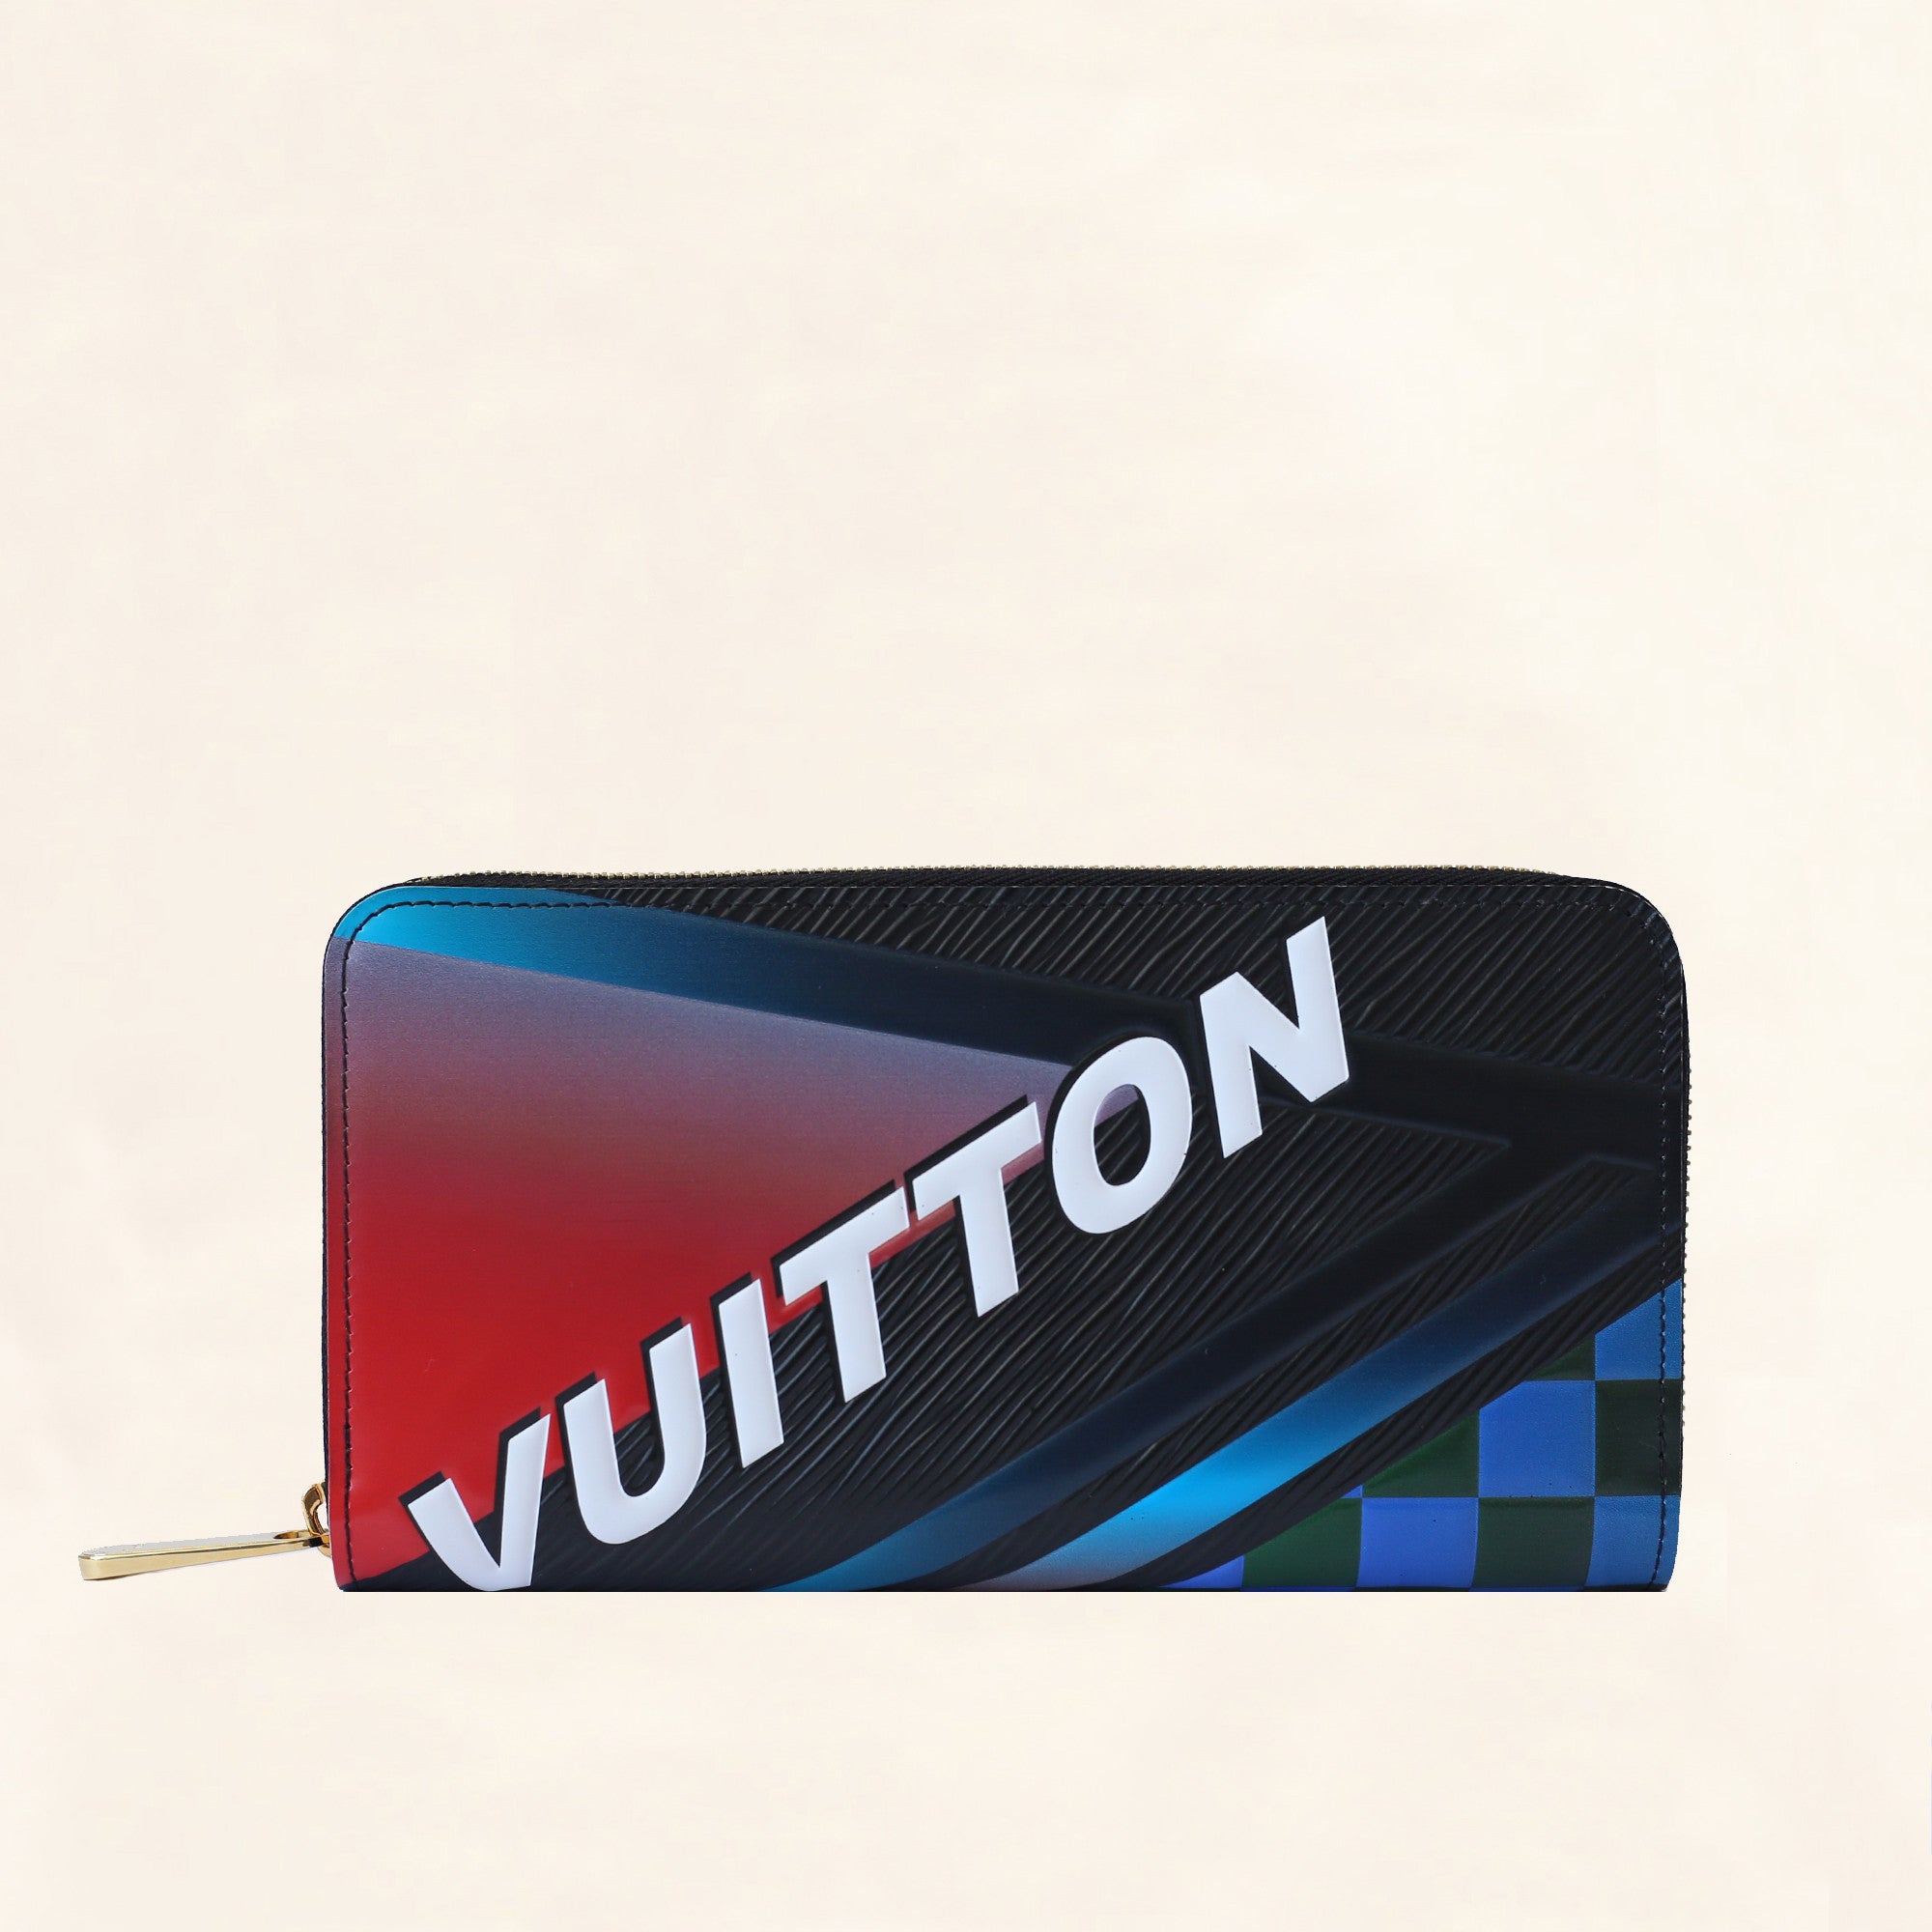 Louis Vuitton x Supreme Black 2017 Z\ippy Organizer Wallet w/ Tags